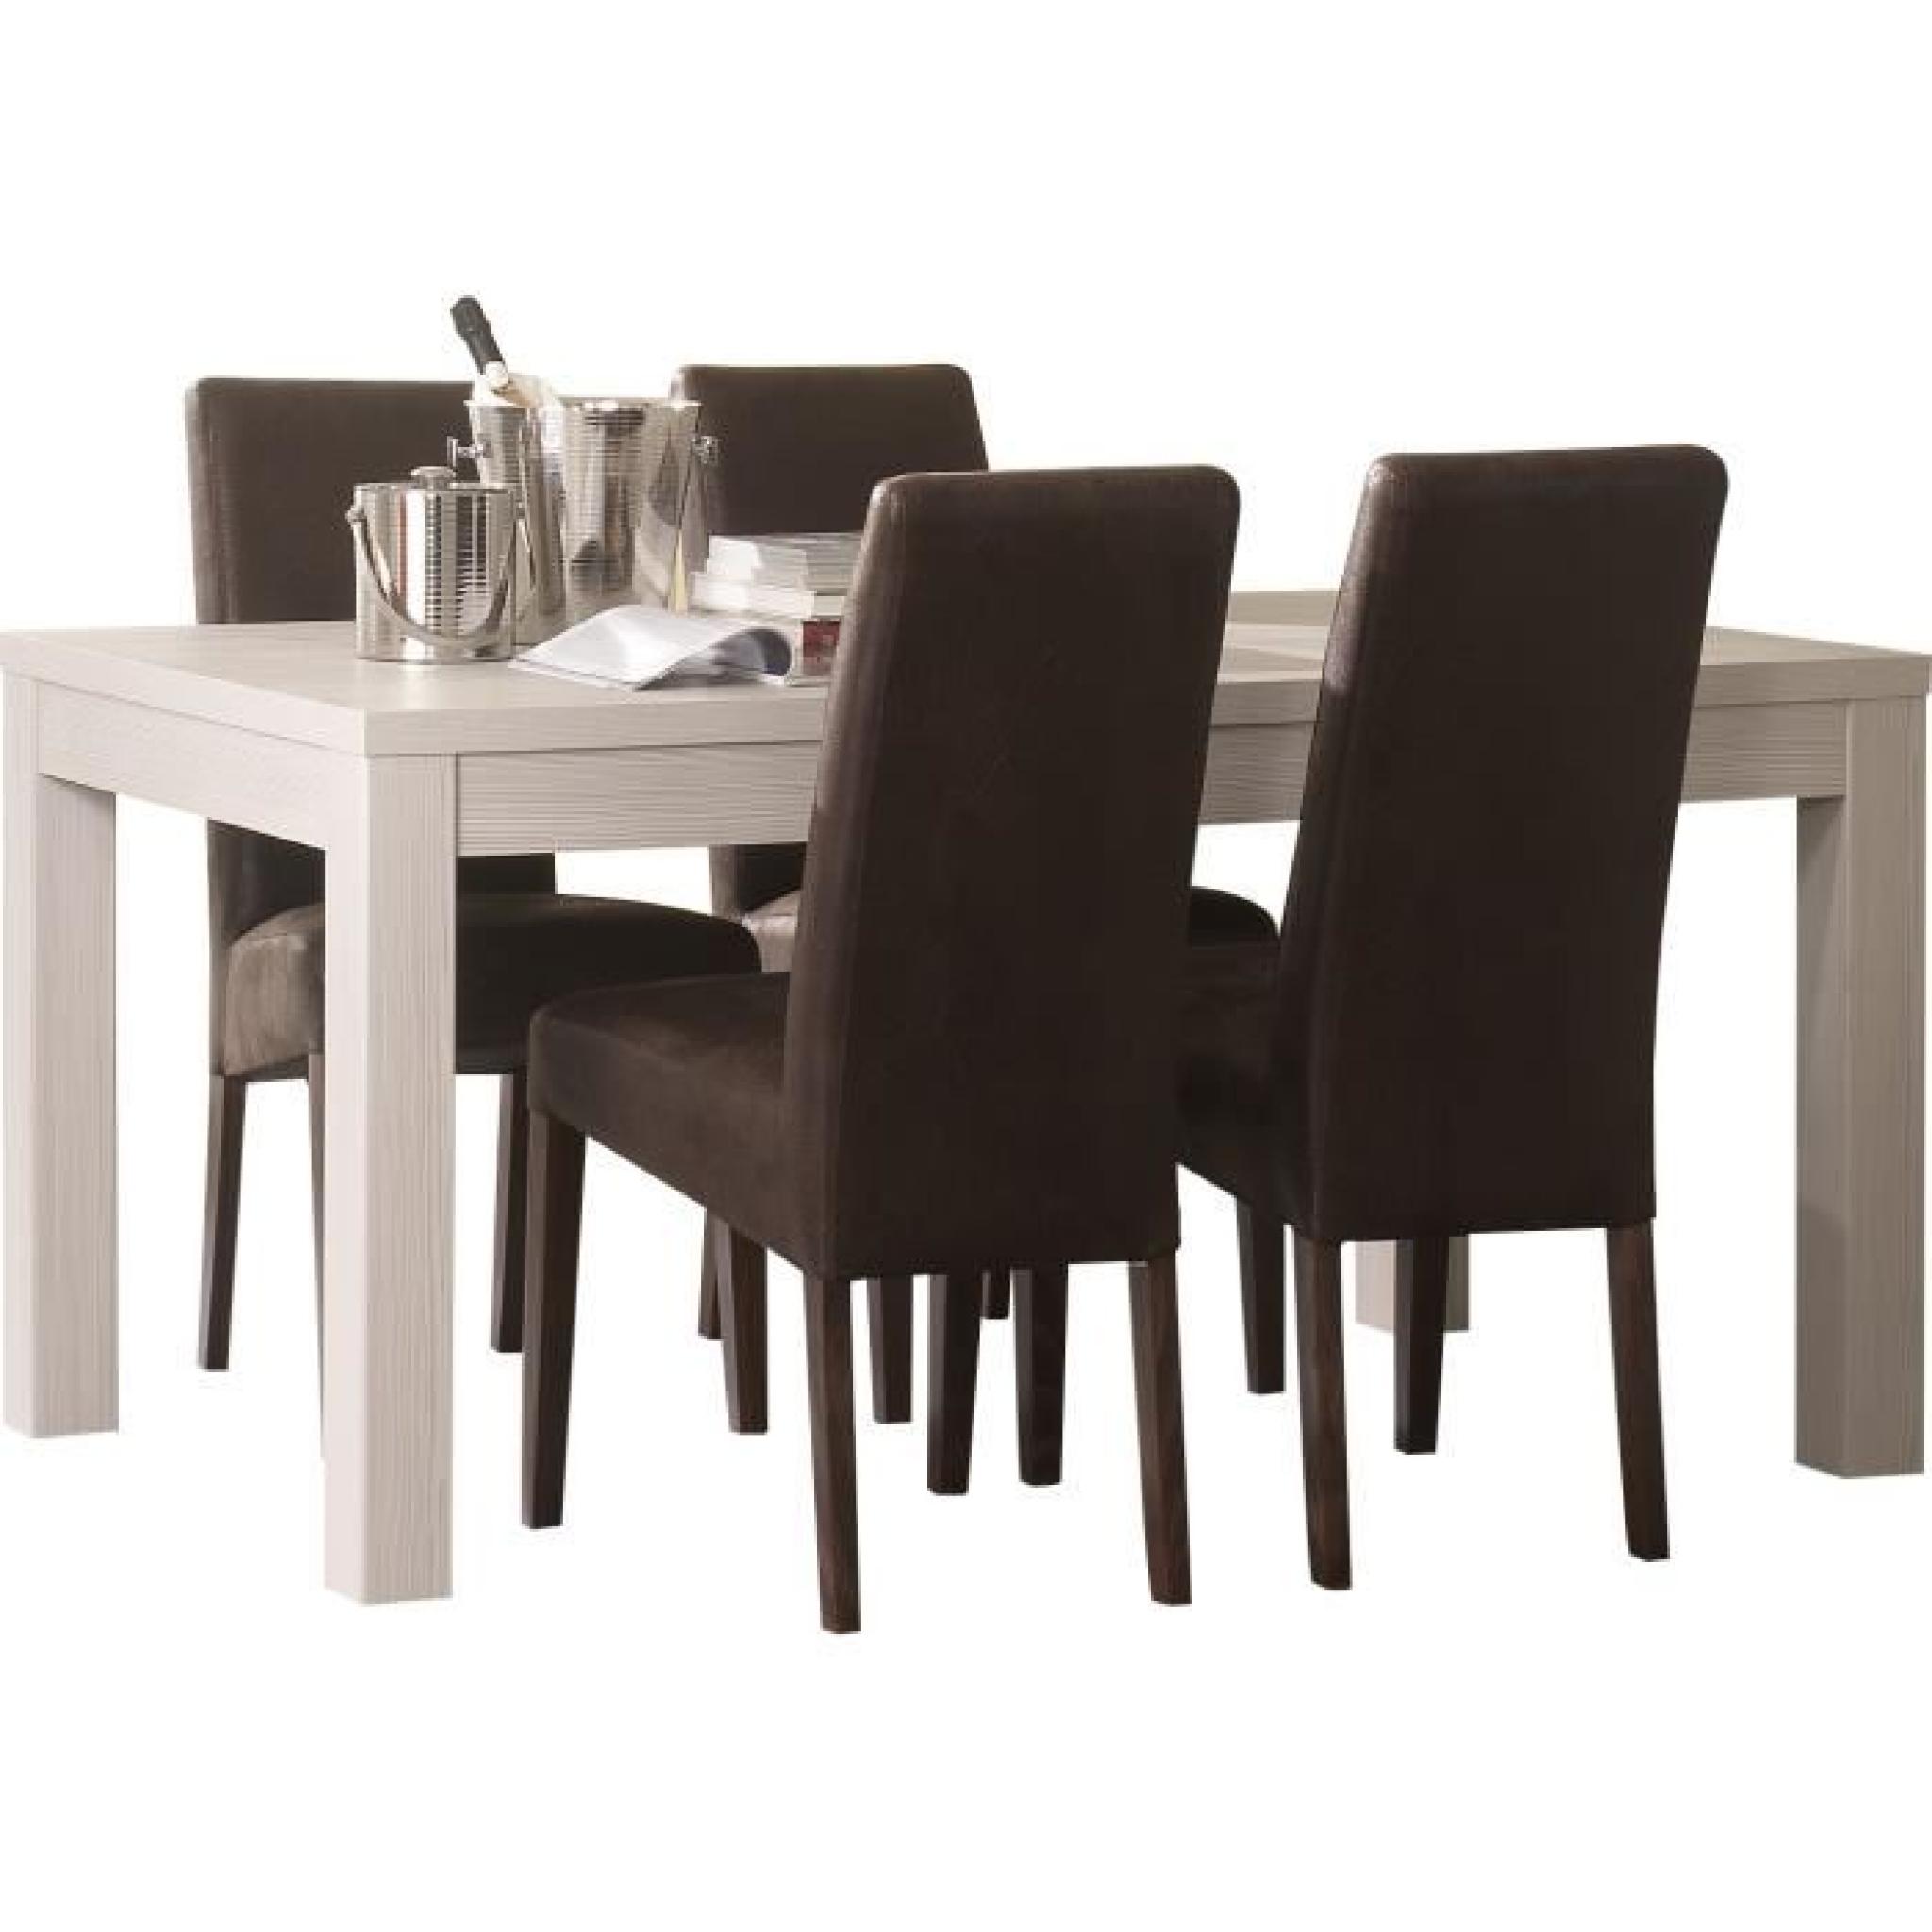 Table 190 cm en bois clair + 4 chaises en tissu brun foncé